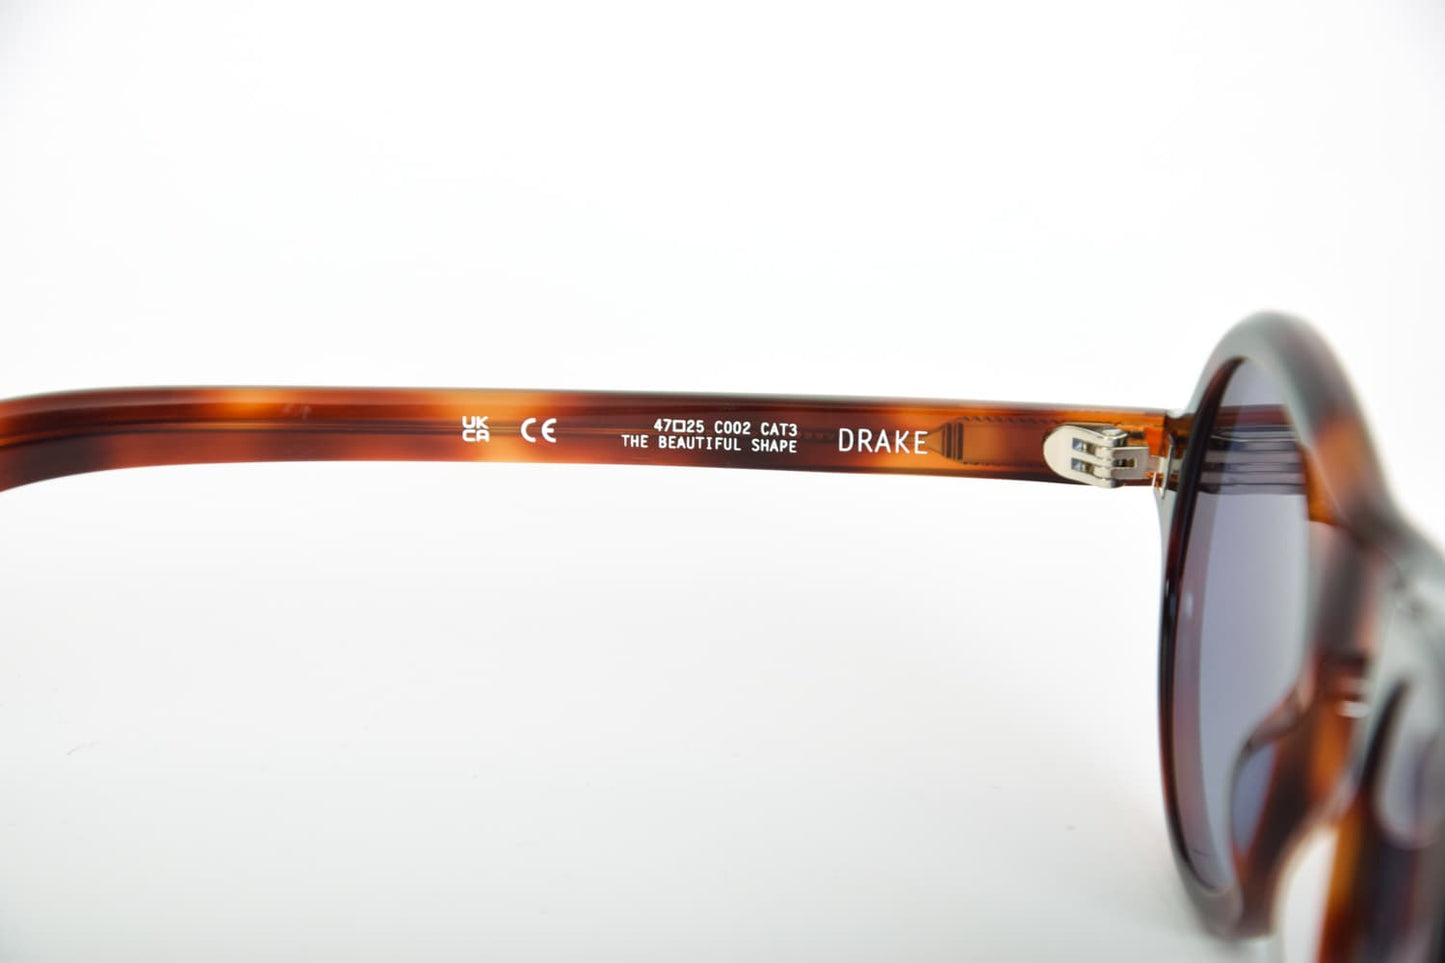 Artigianato di alta qualità: occhiali da sole Kaleos Drake Tartaruga